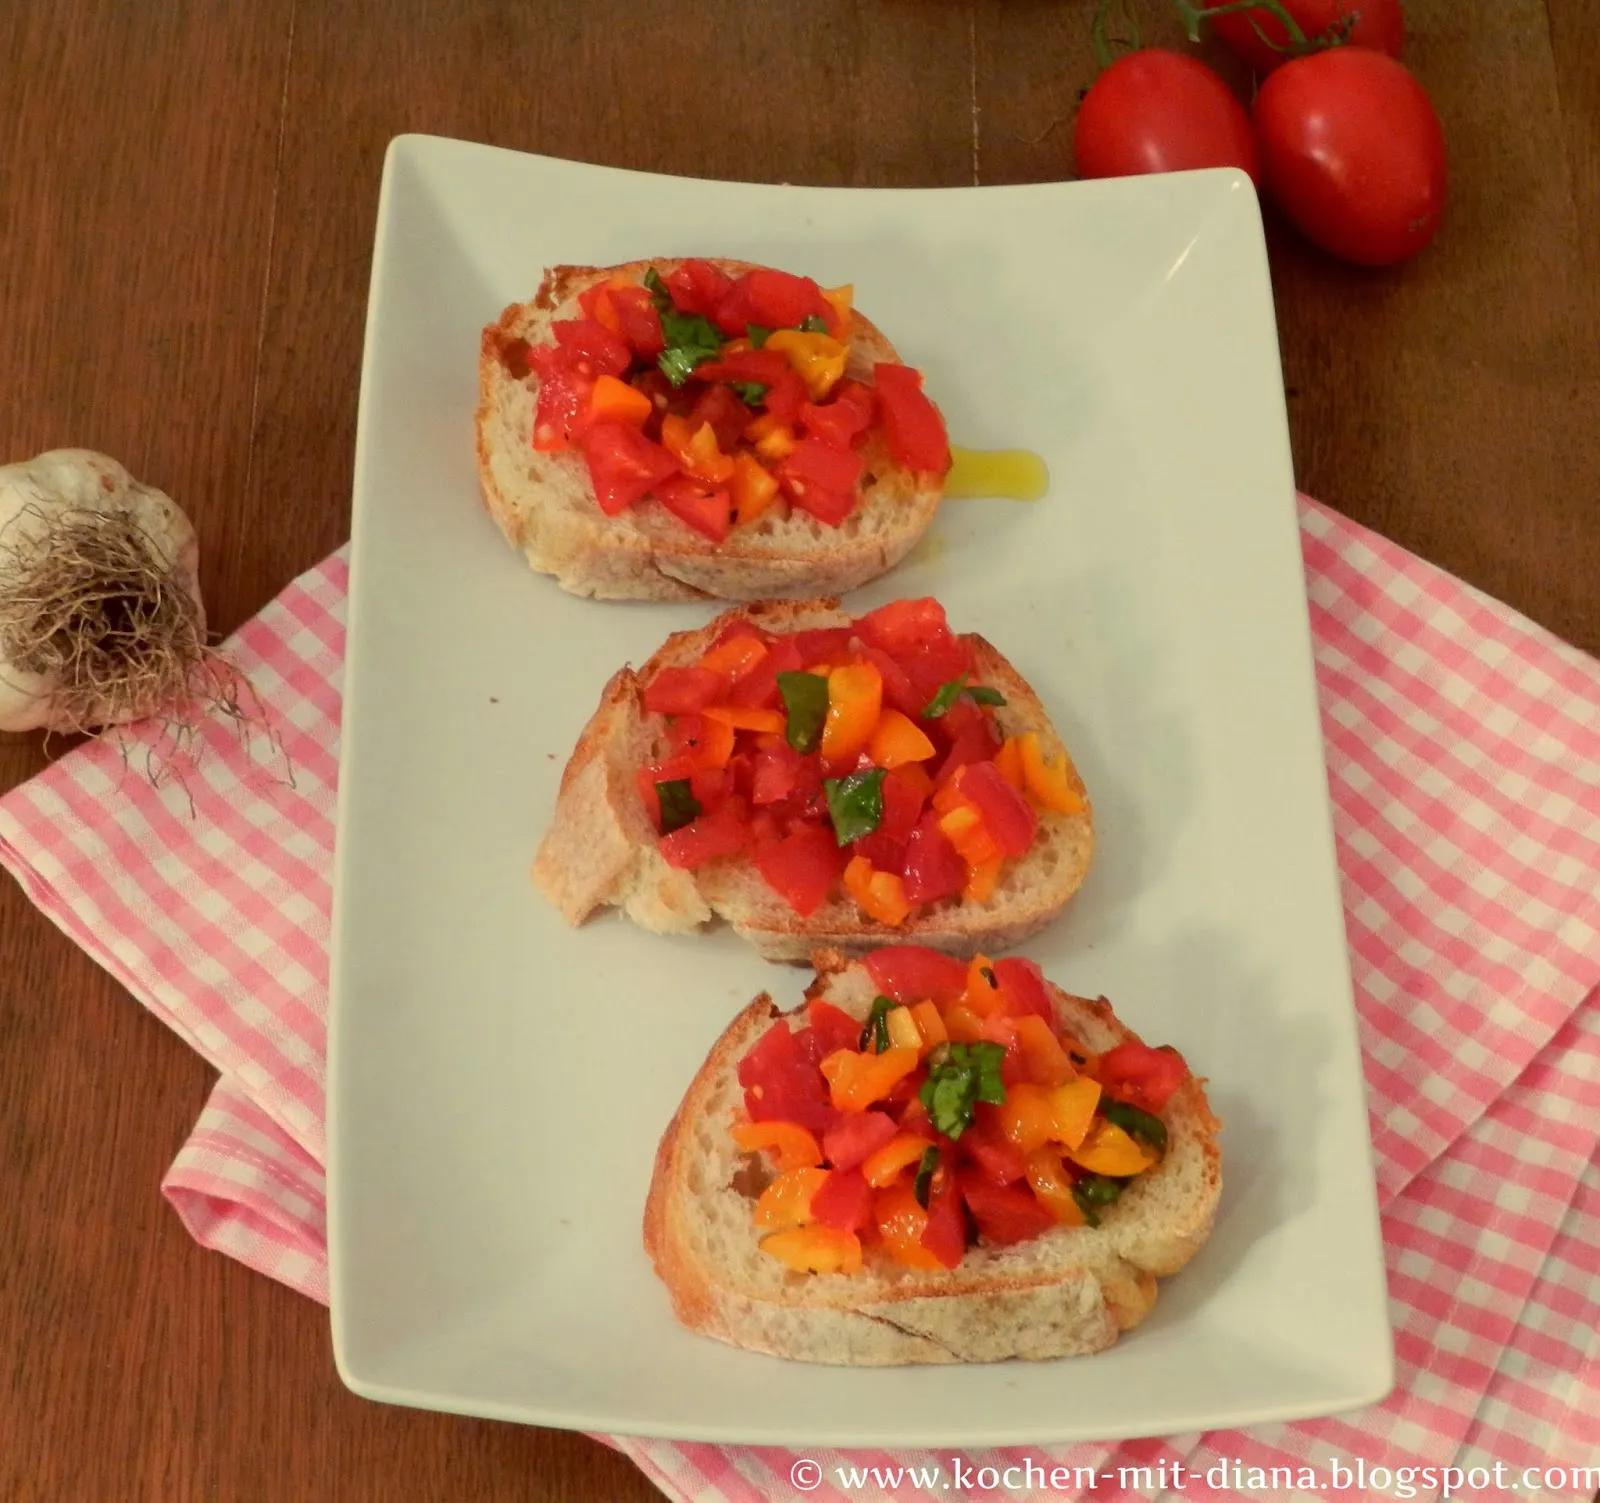 Bruschetta mit Tomaten und Basilikum - Kochen mit Diana